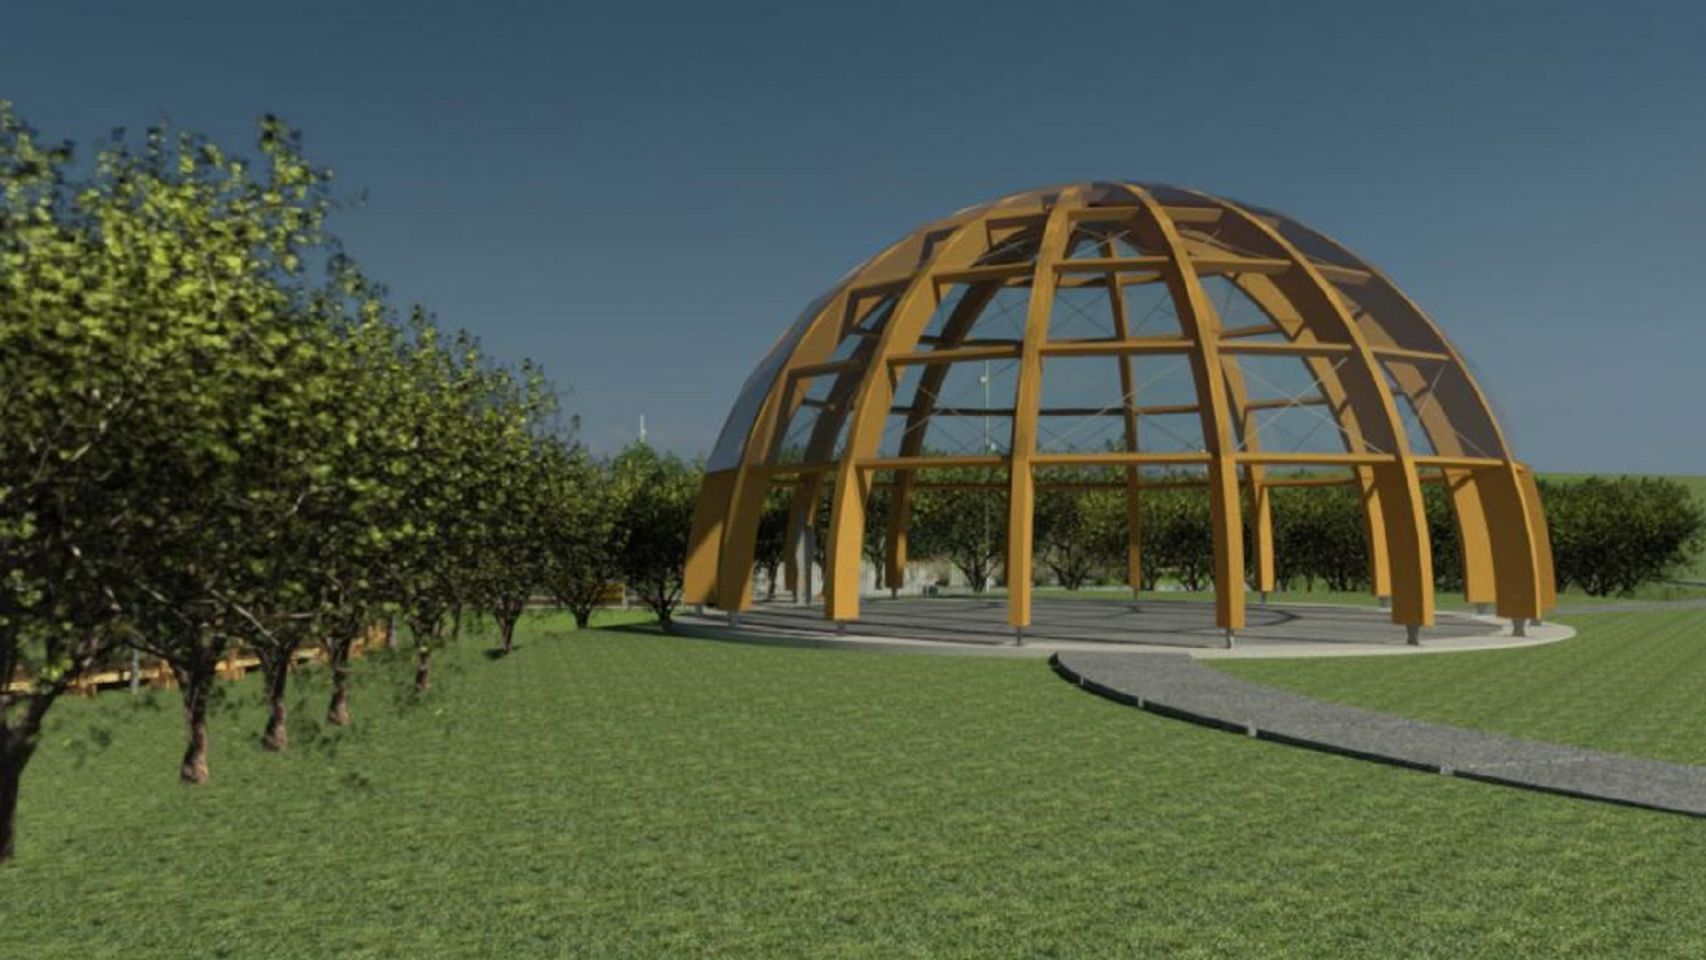 La cúpula del nuevo parque de Arteixo.